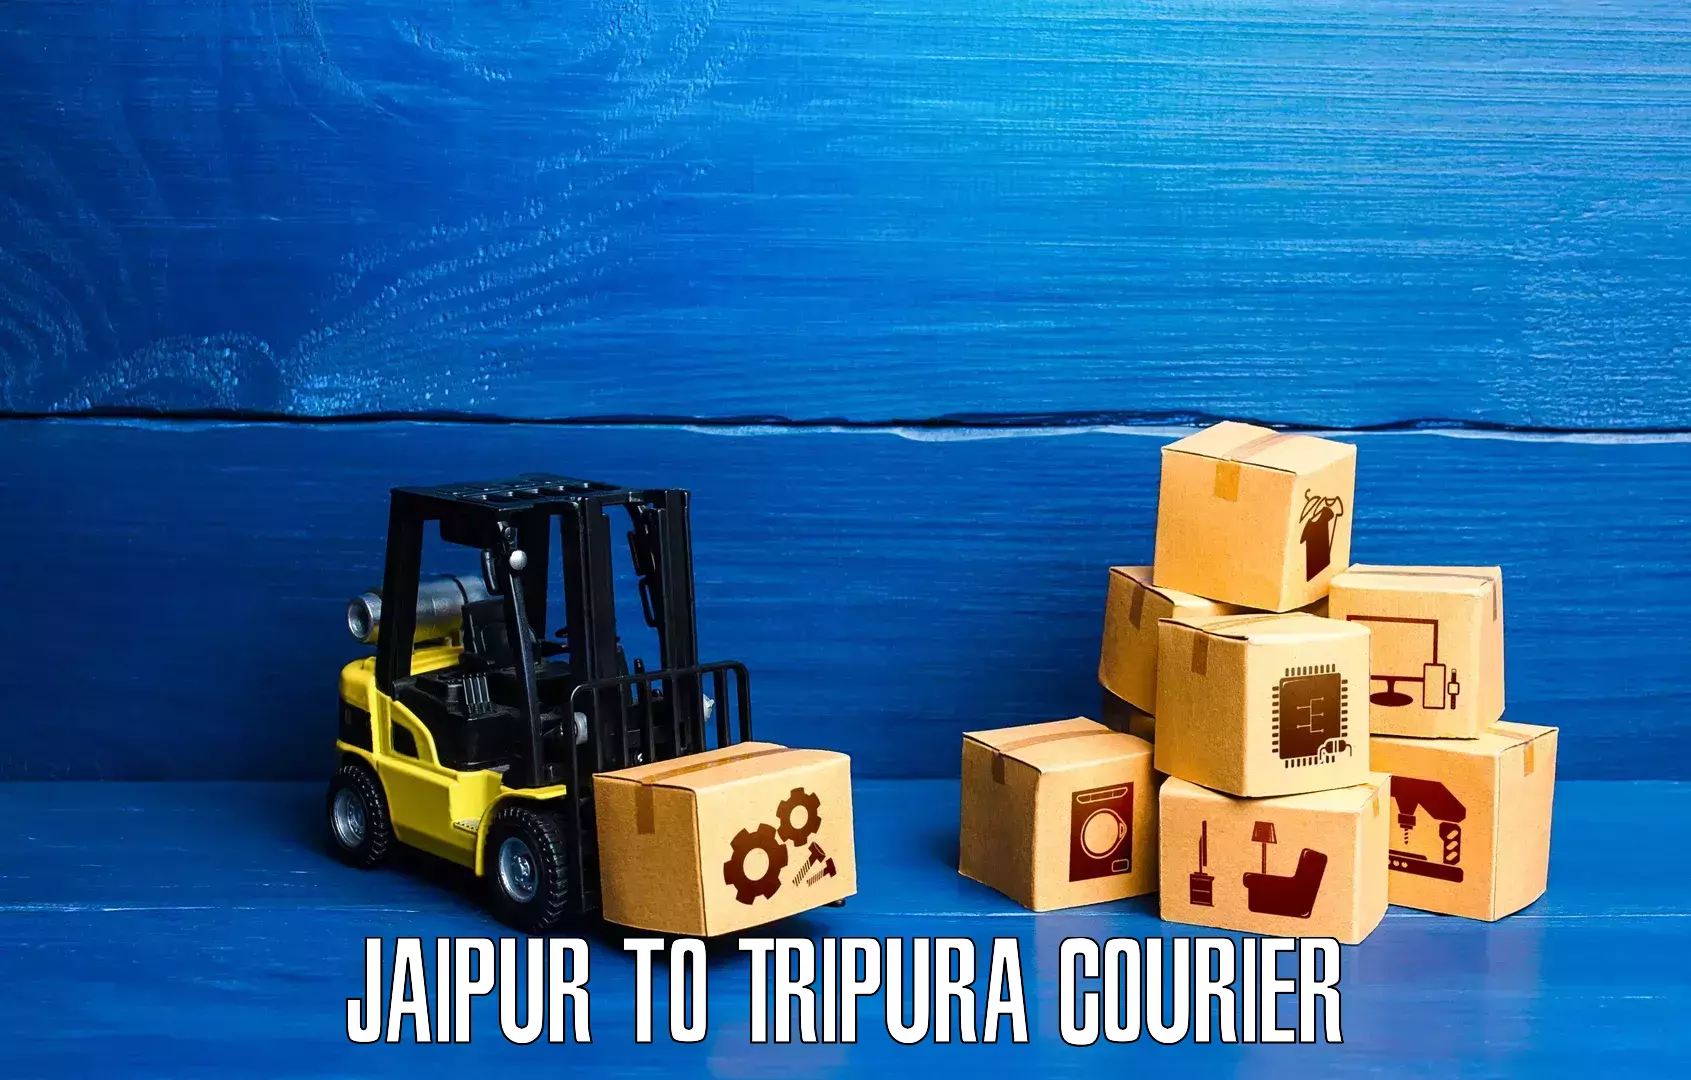 Flexible parcel services Jaipur to Udaipur Tripura